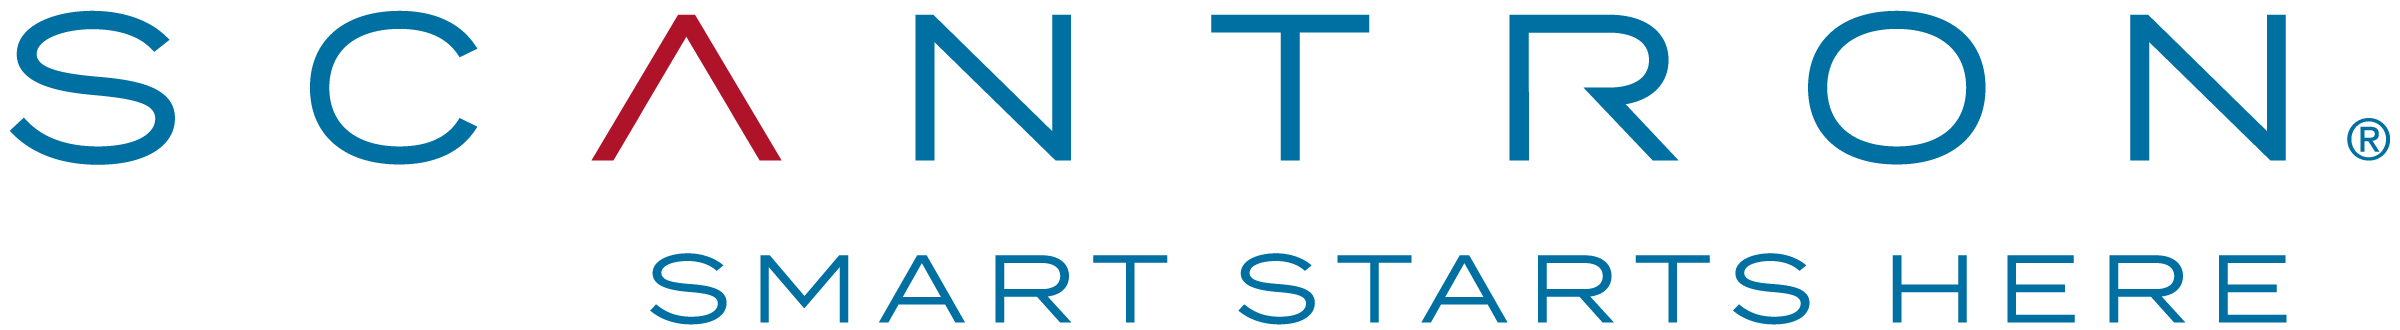 Scantron Logo